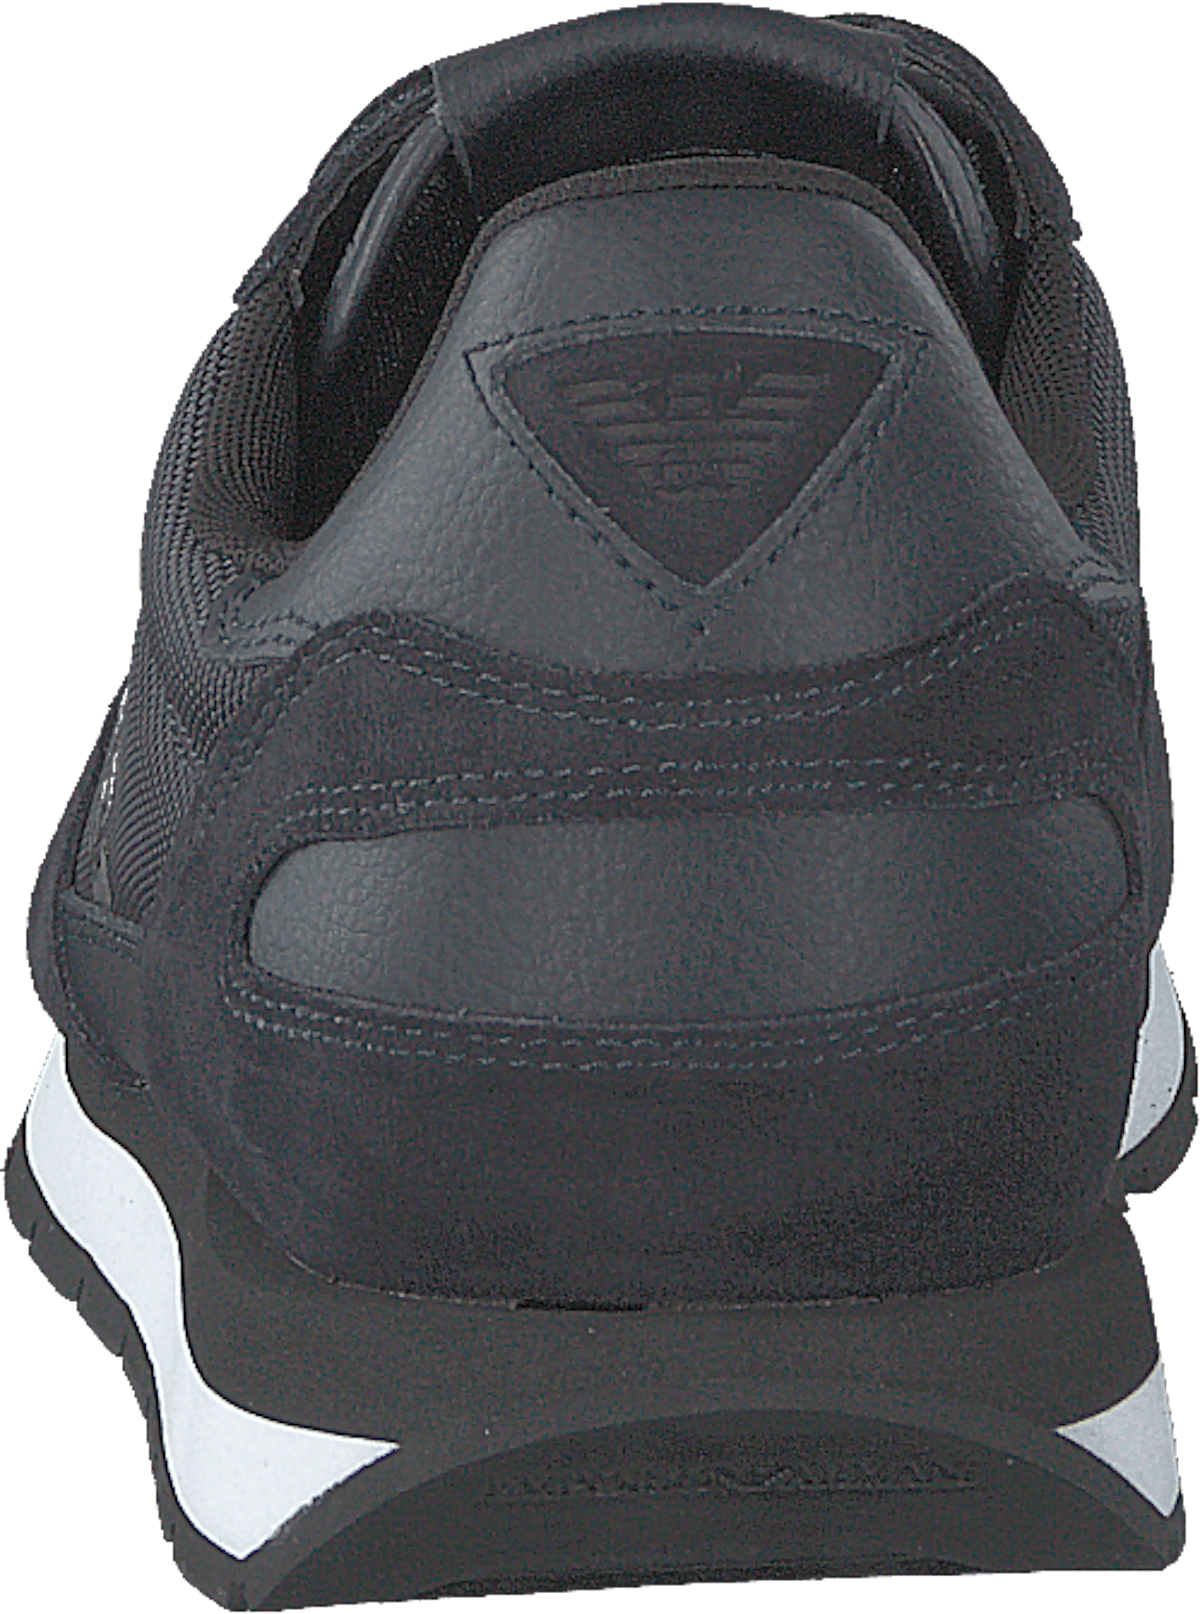 Sneaker X4x215 T370navy/navy